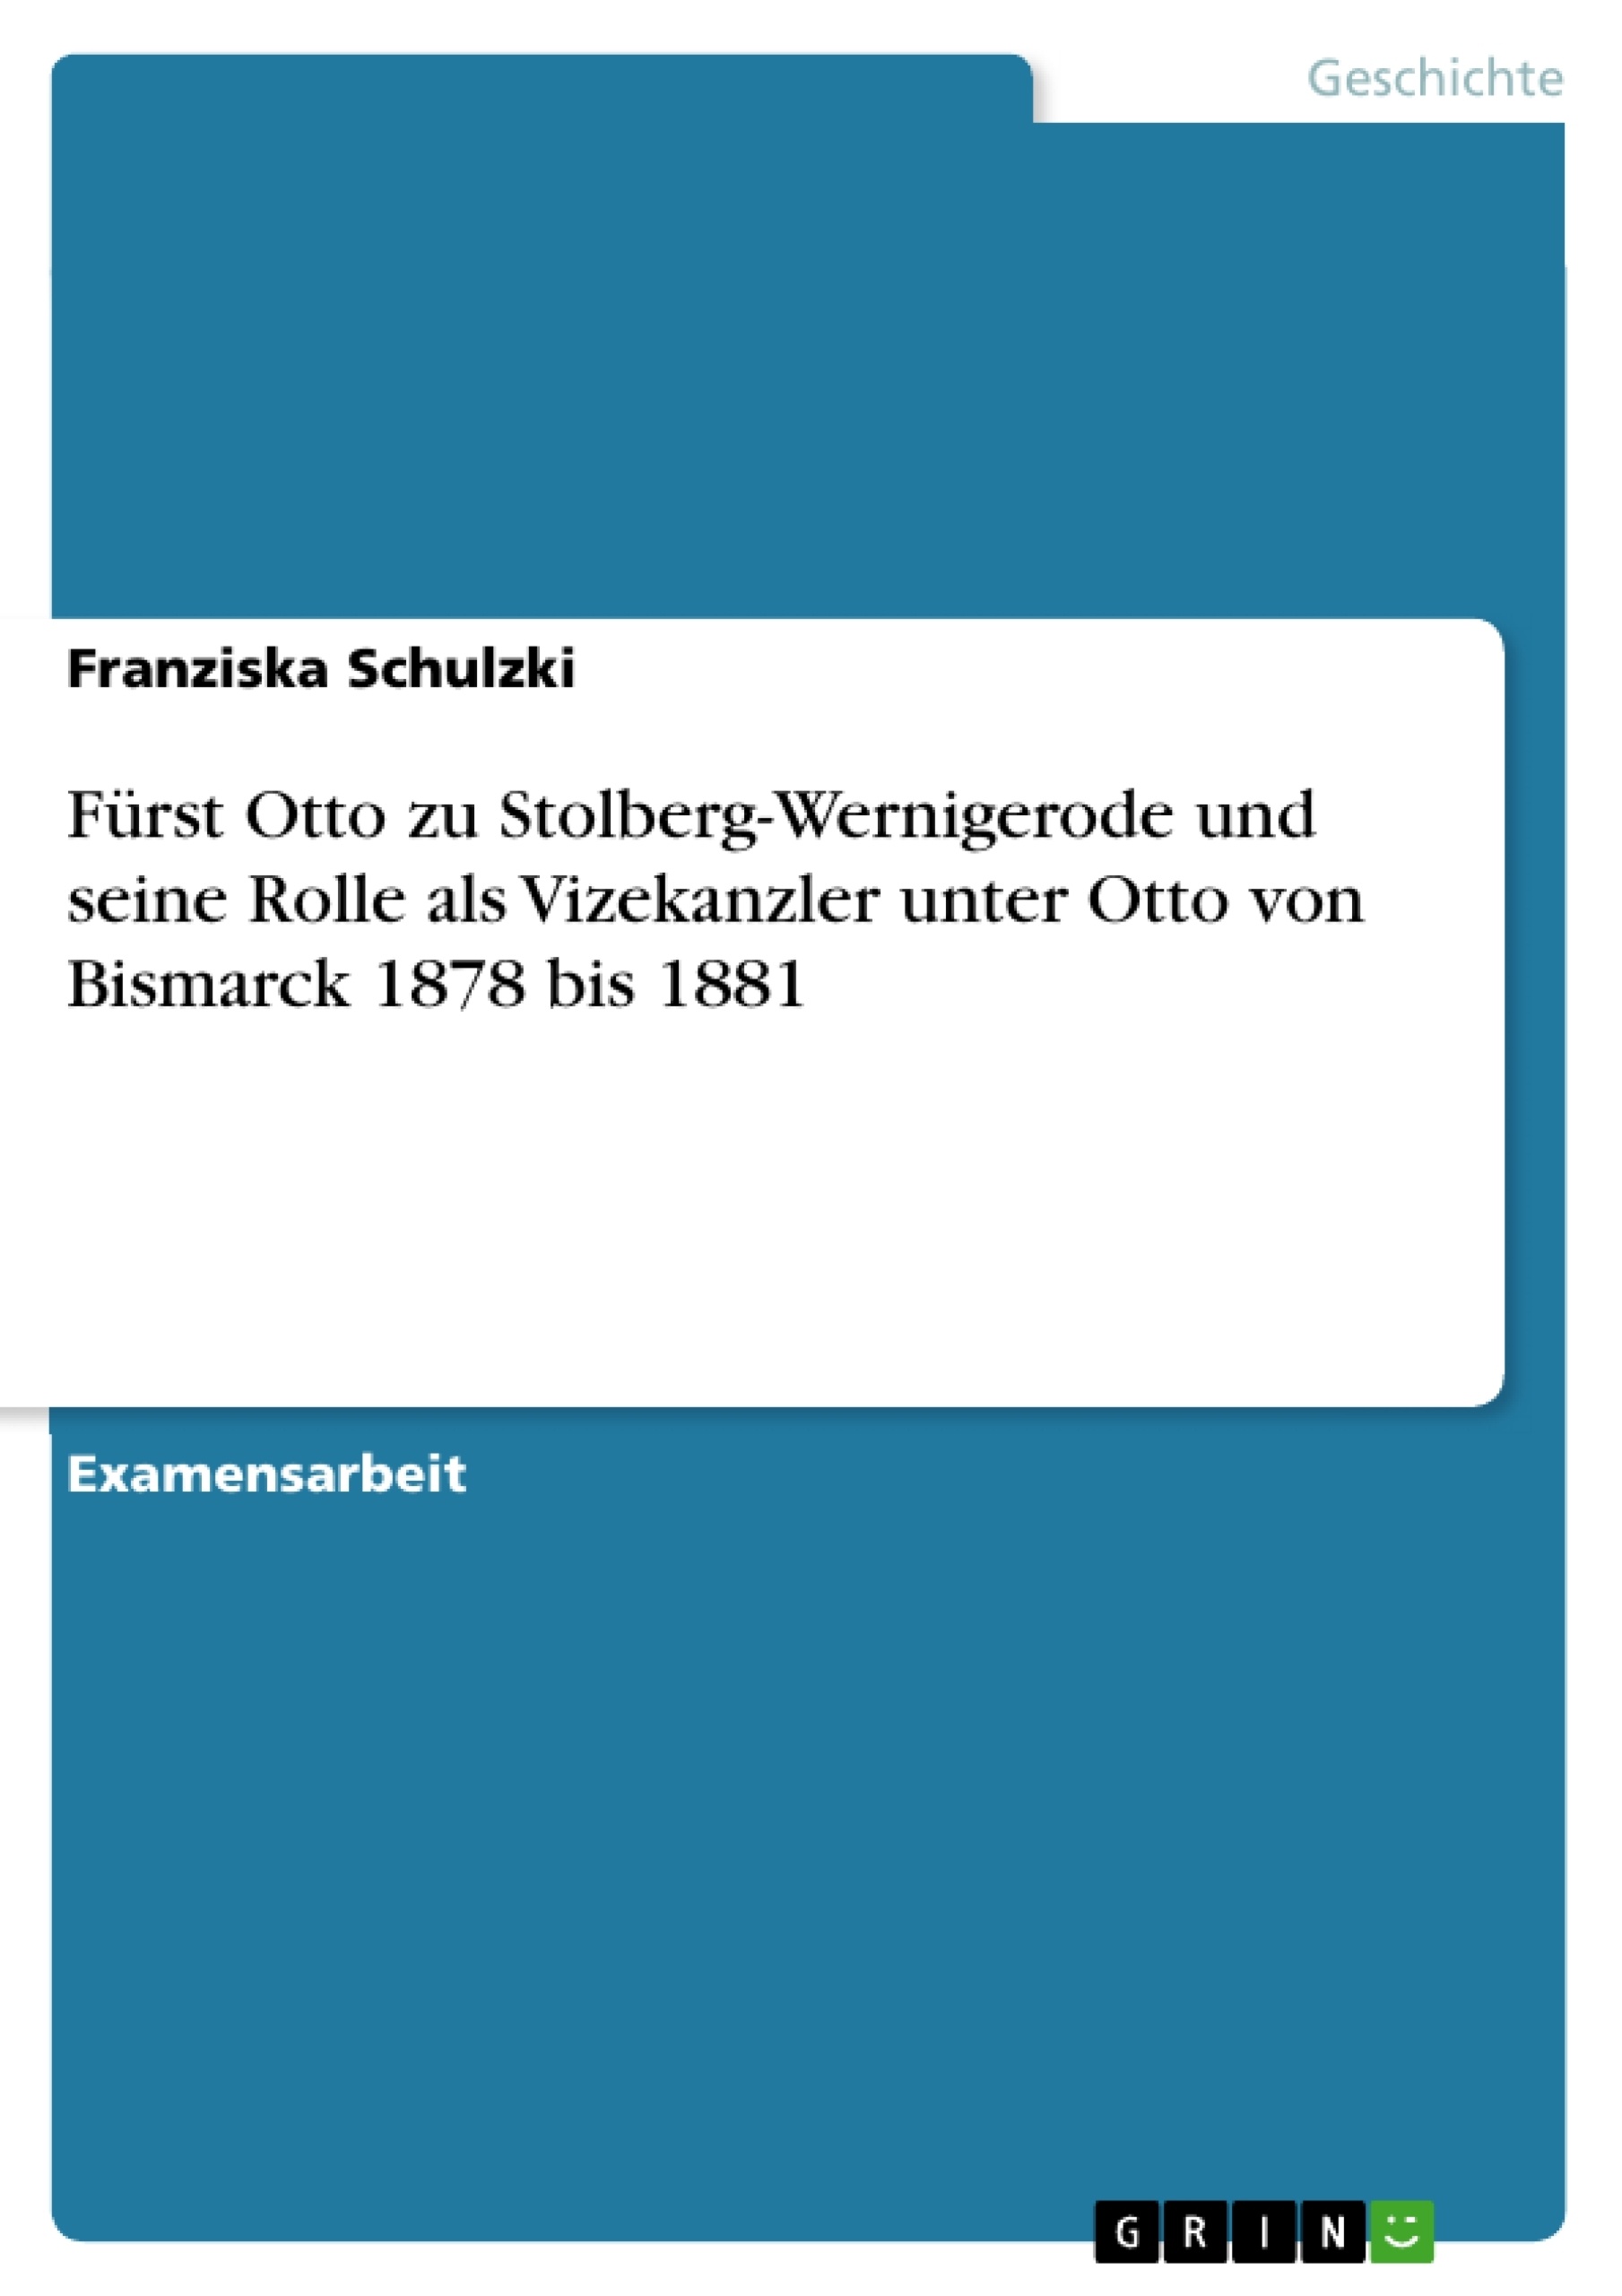 Título: Fürst Otto zu Stolberg-Wernigerode und seine Rolle als Vizekanzler unter Otto von Bismarck 1878 bis 1881